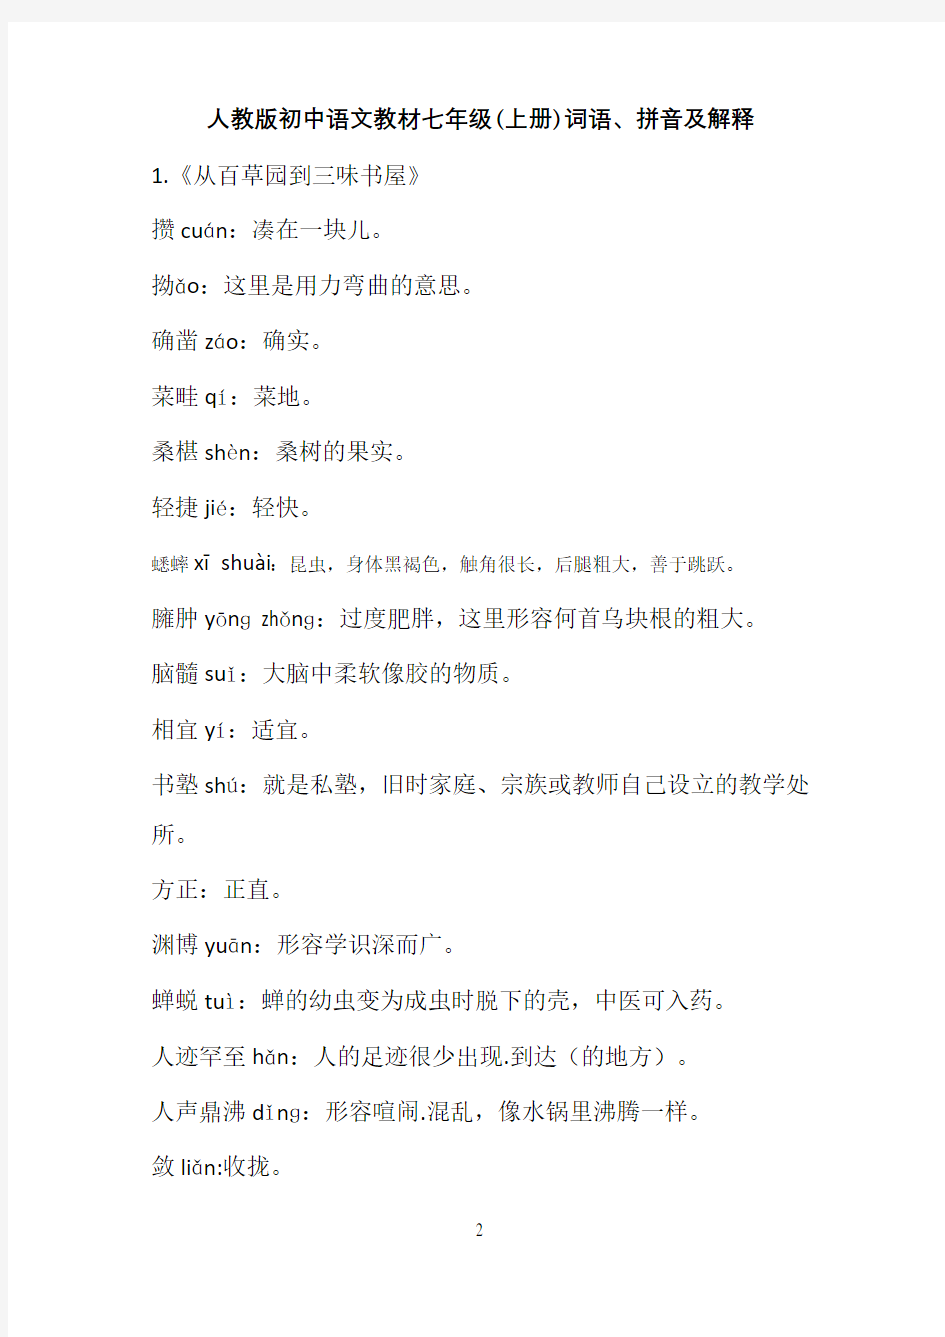 人教版初中语文教材七年级(上册)词语、拼音及解释